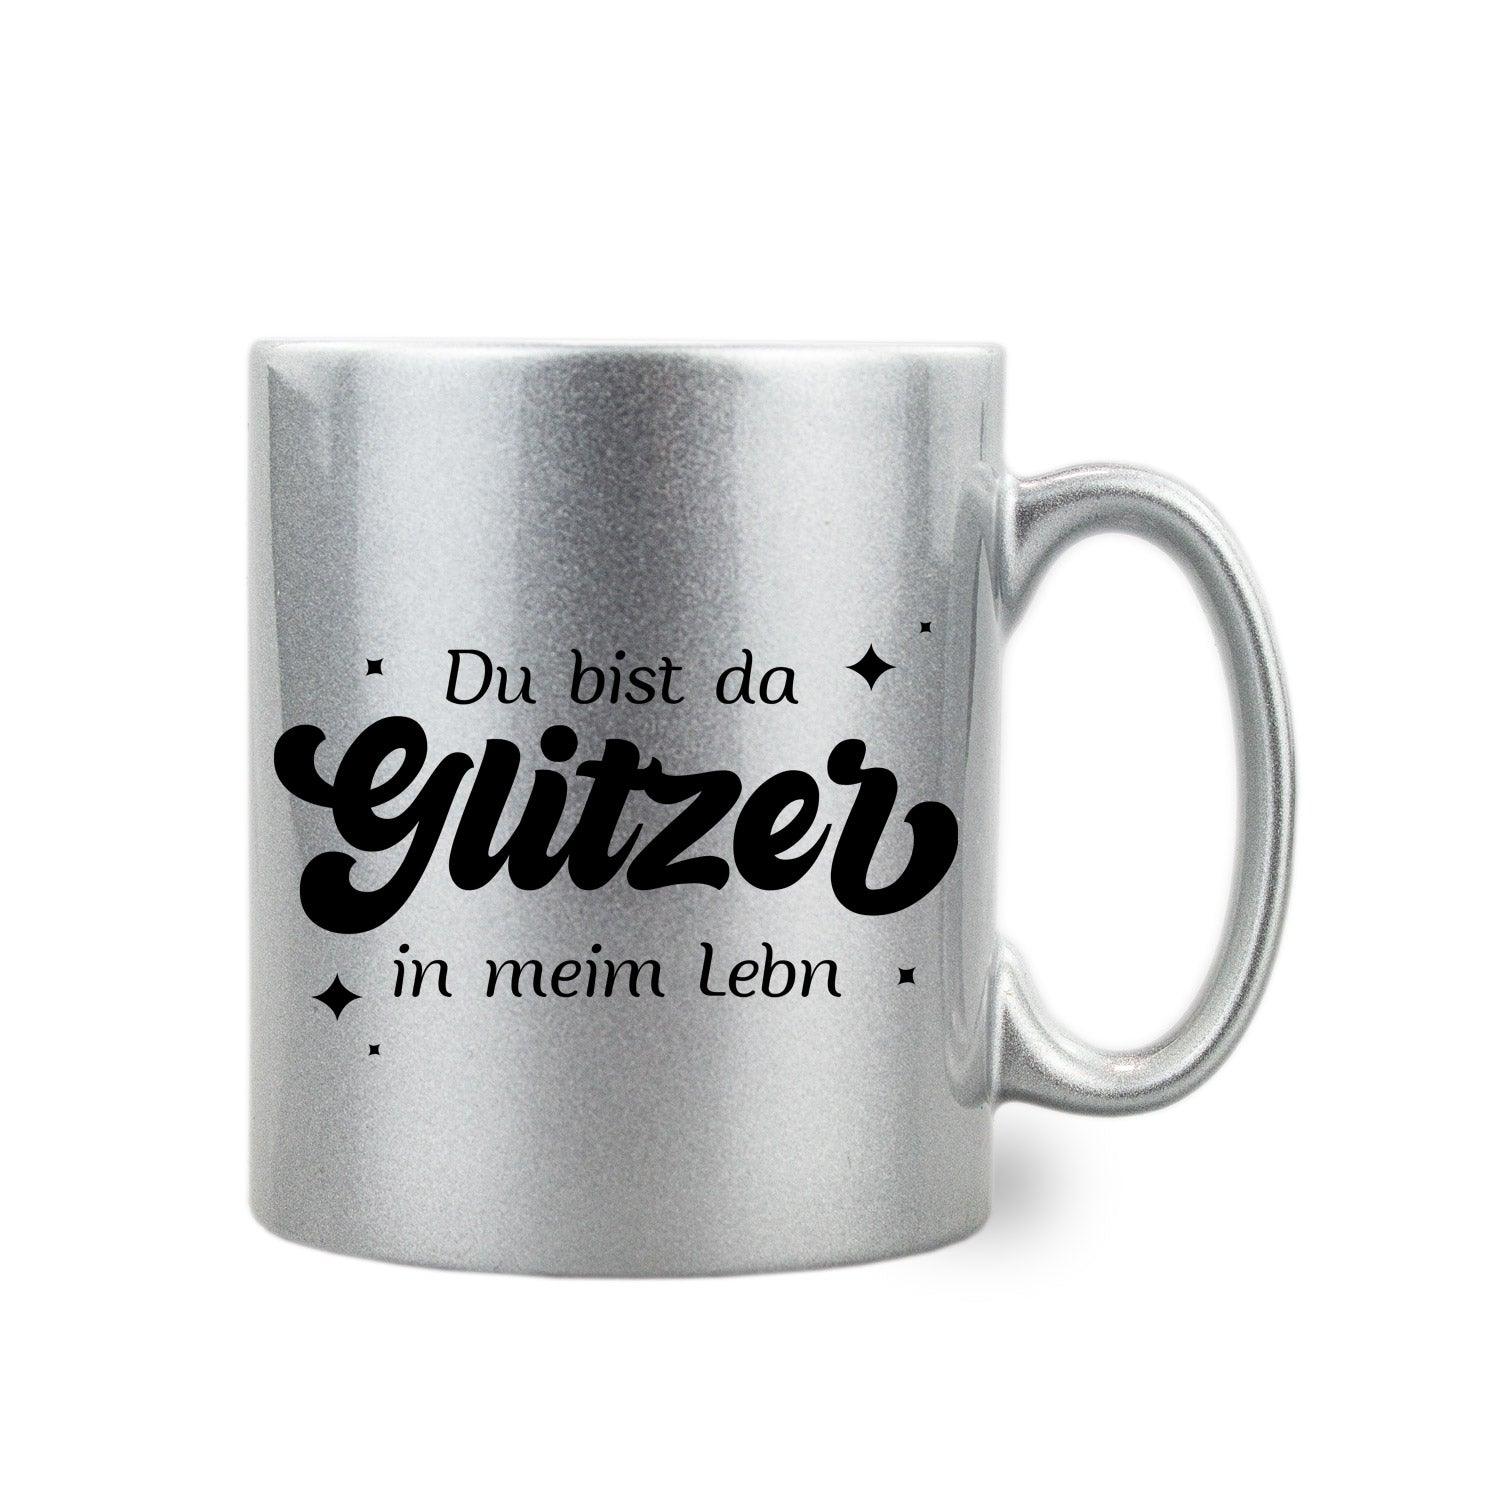 Silber-Glitzer-Haferl "Du bist da Glitzer" - bavariashop - mei LebensGfui